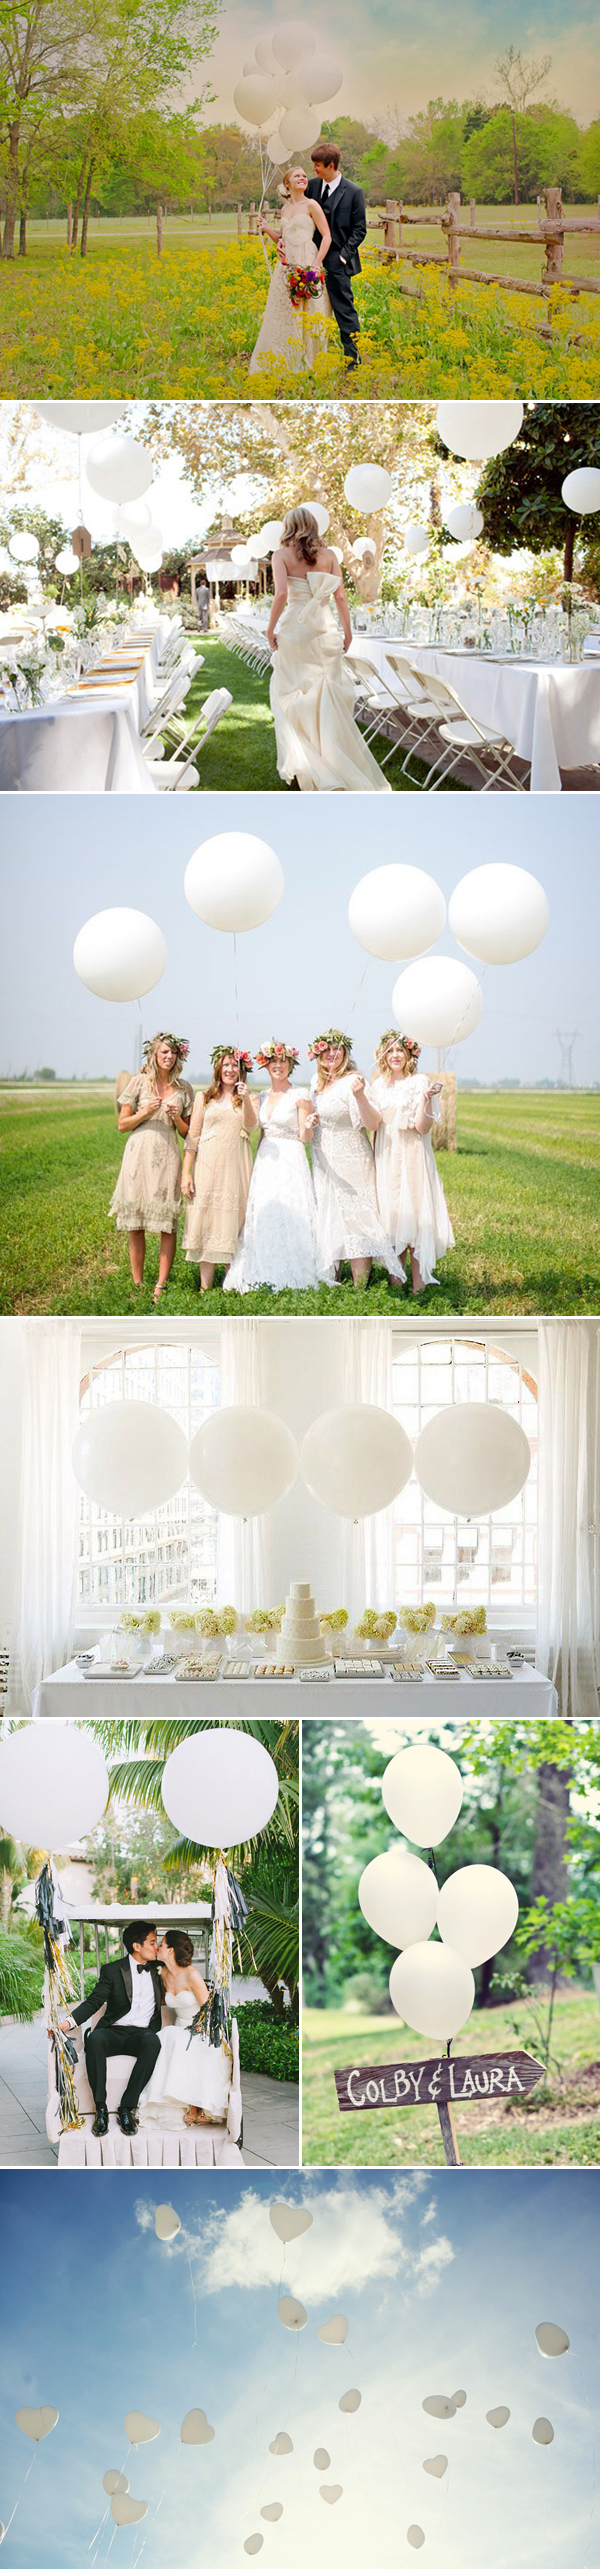 balloons03-white